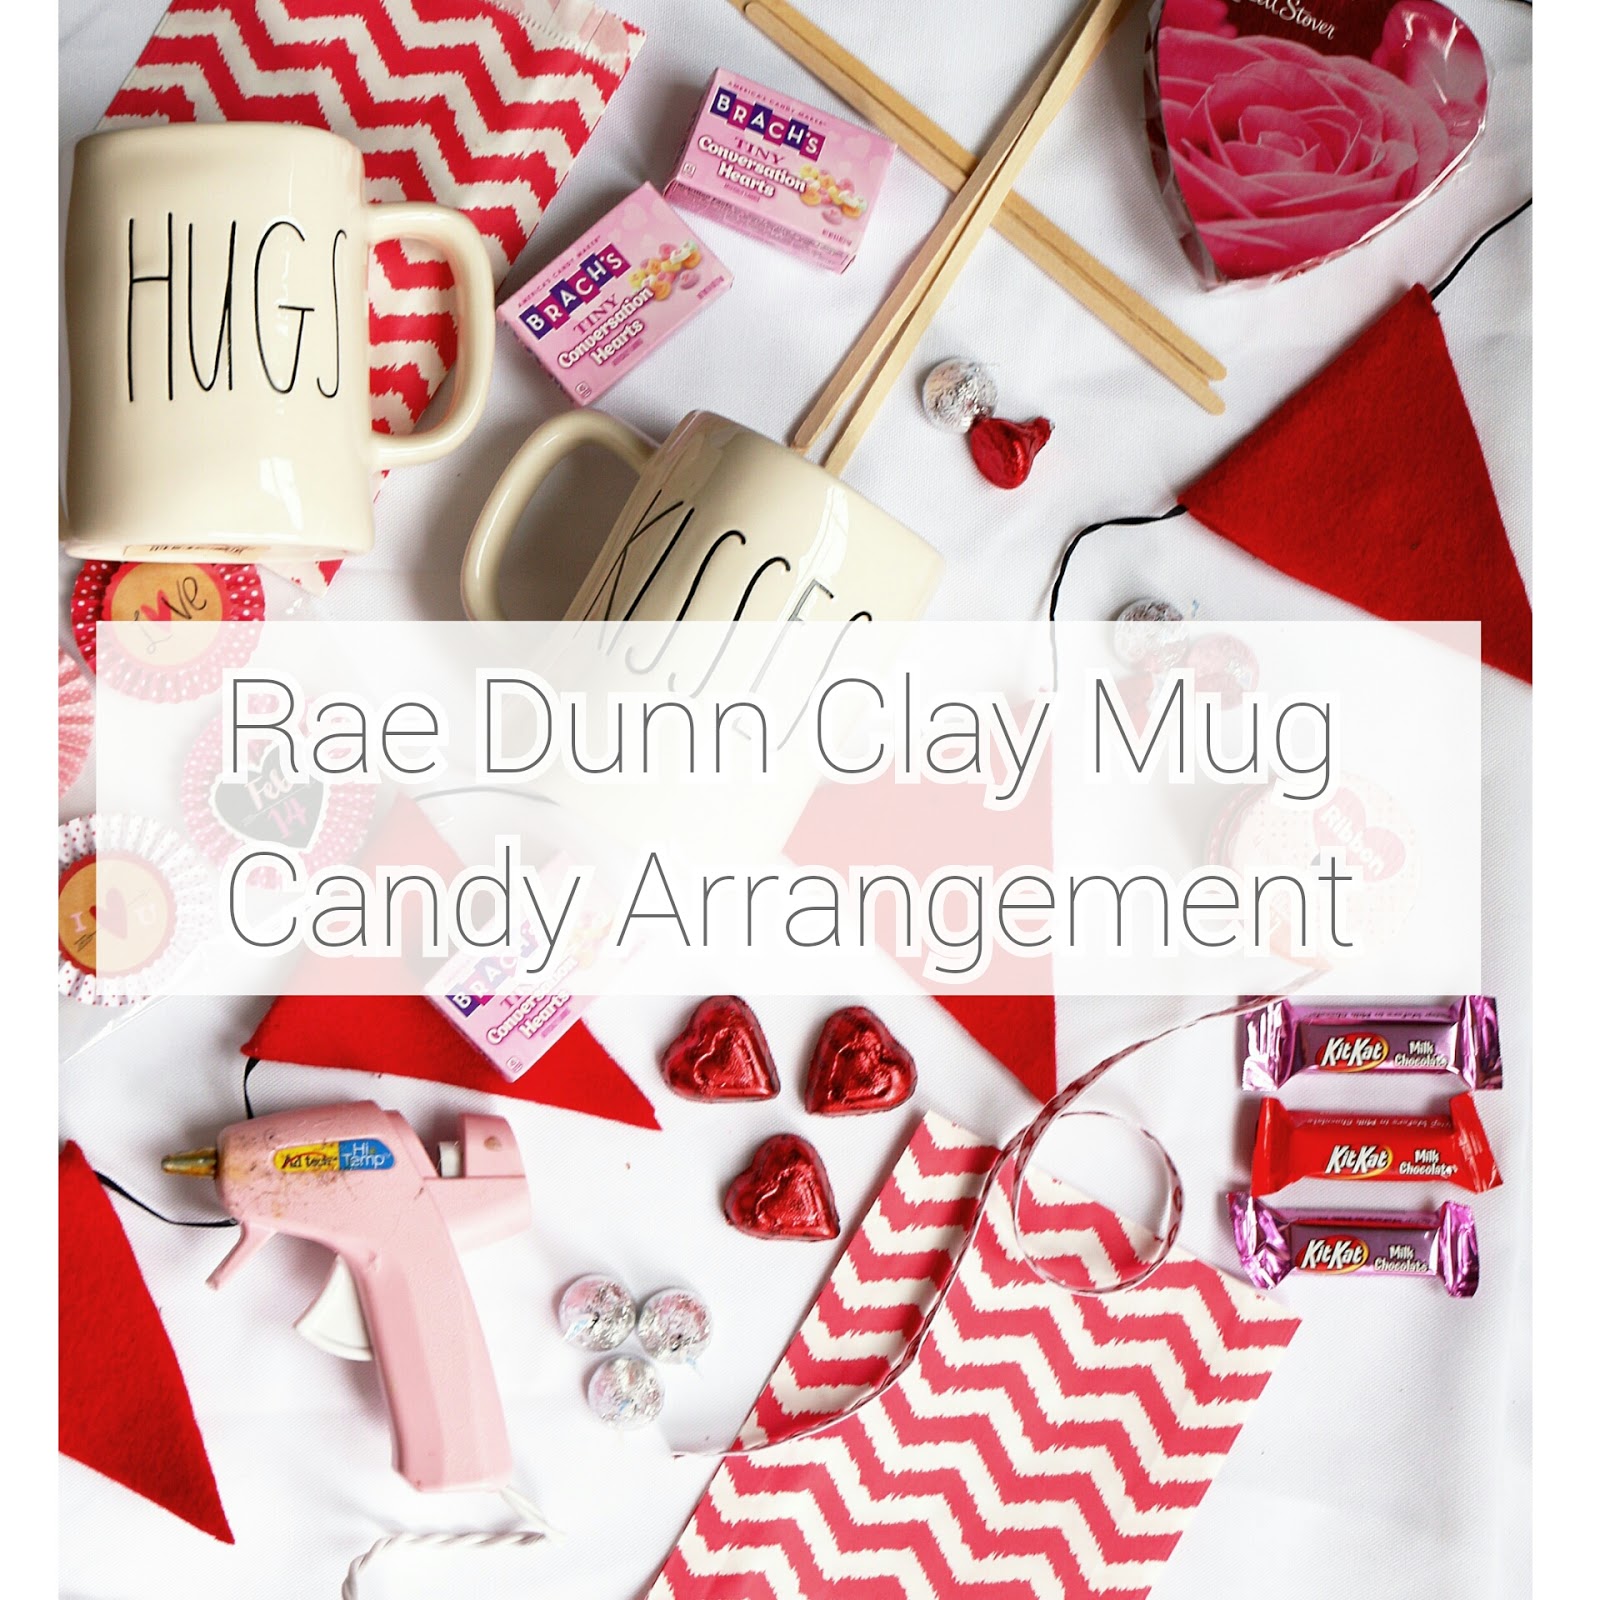 Rae Dunn Clay Mug gift